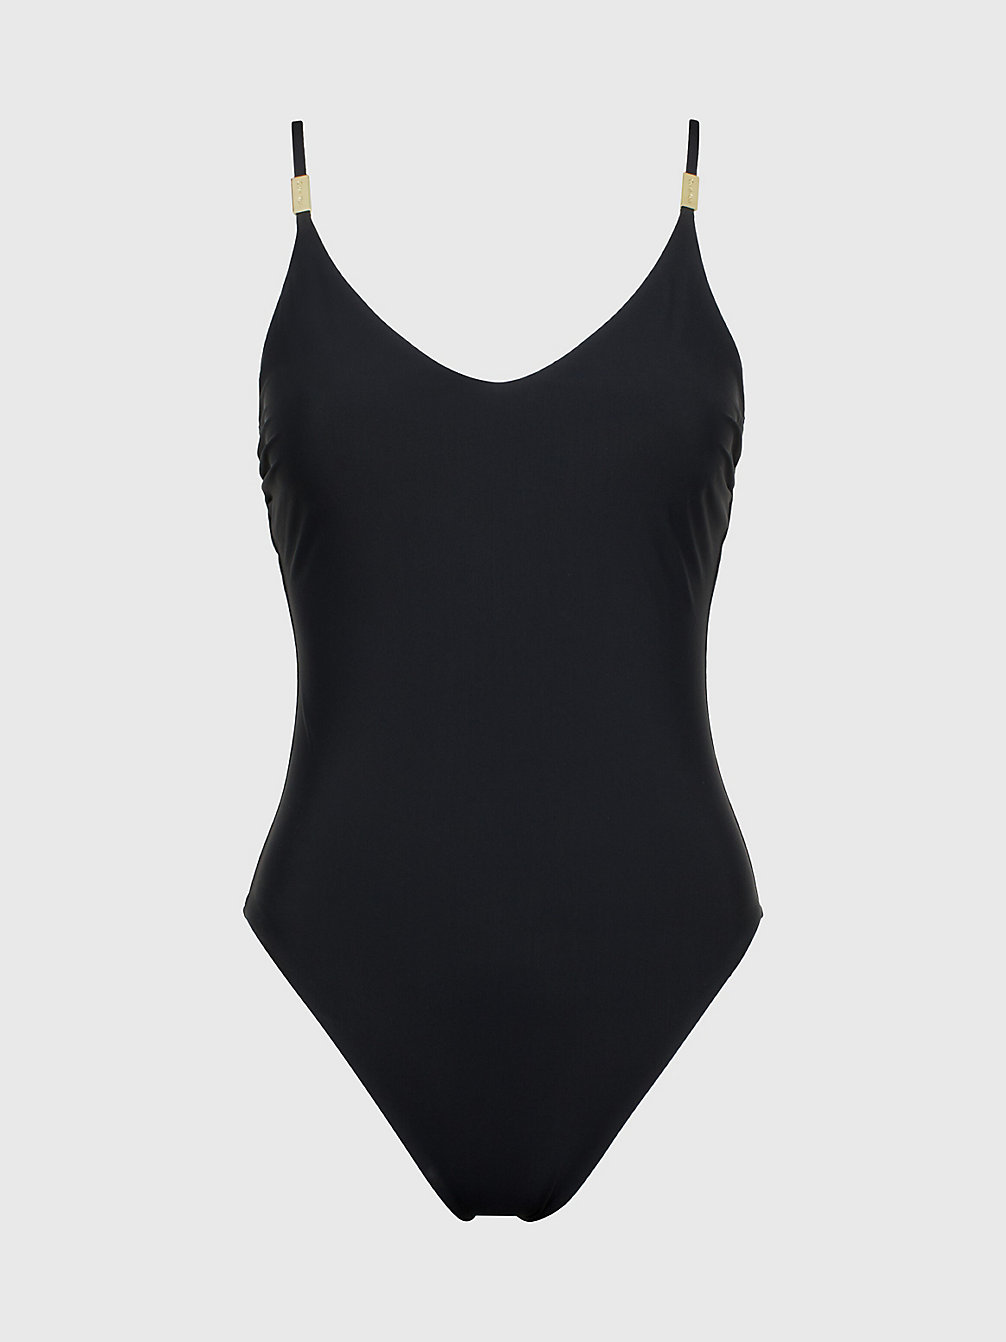 PVH BLACK > Strój Kąpielowy Z Odsłoniętymi Plecami - Core Solids > undefined Kobiety - Calvin Klein